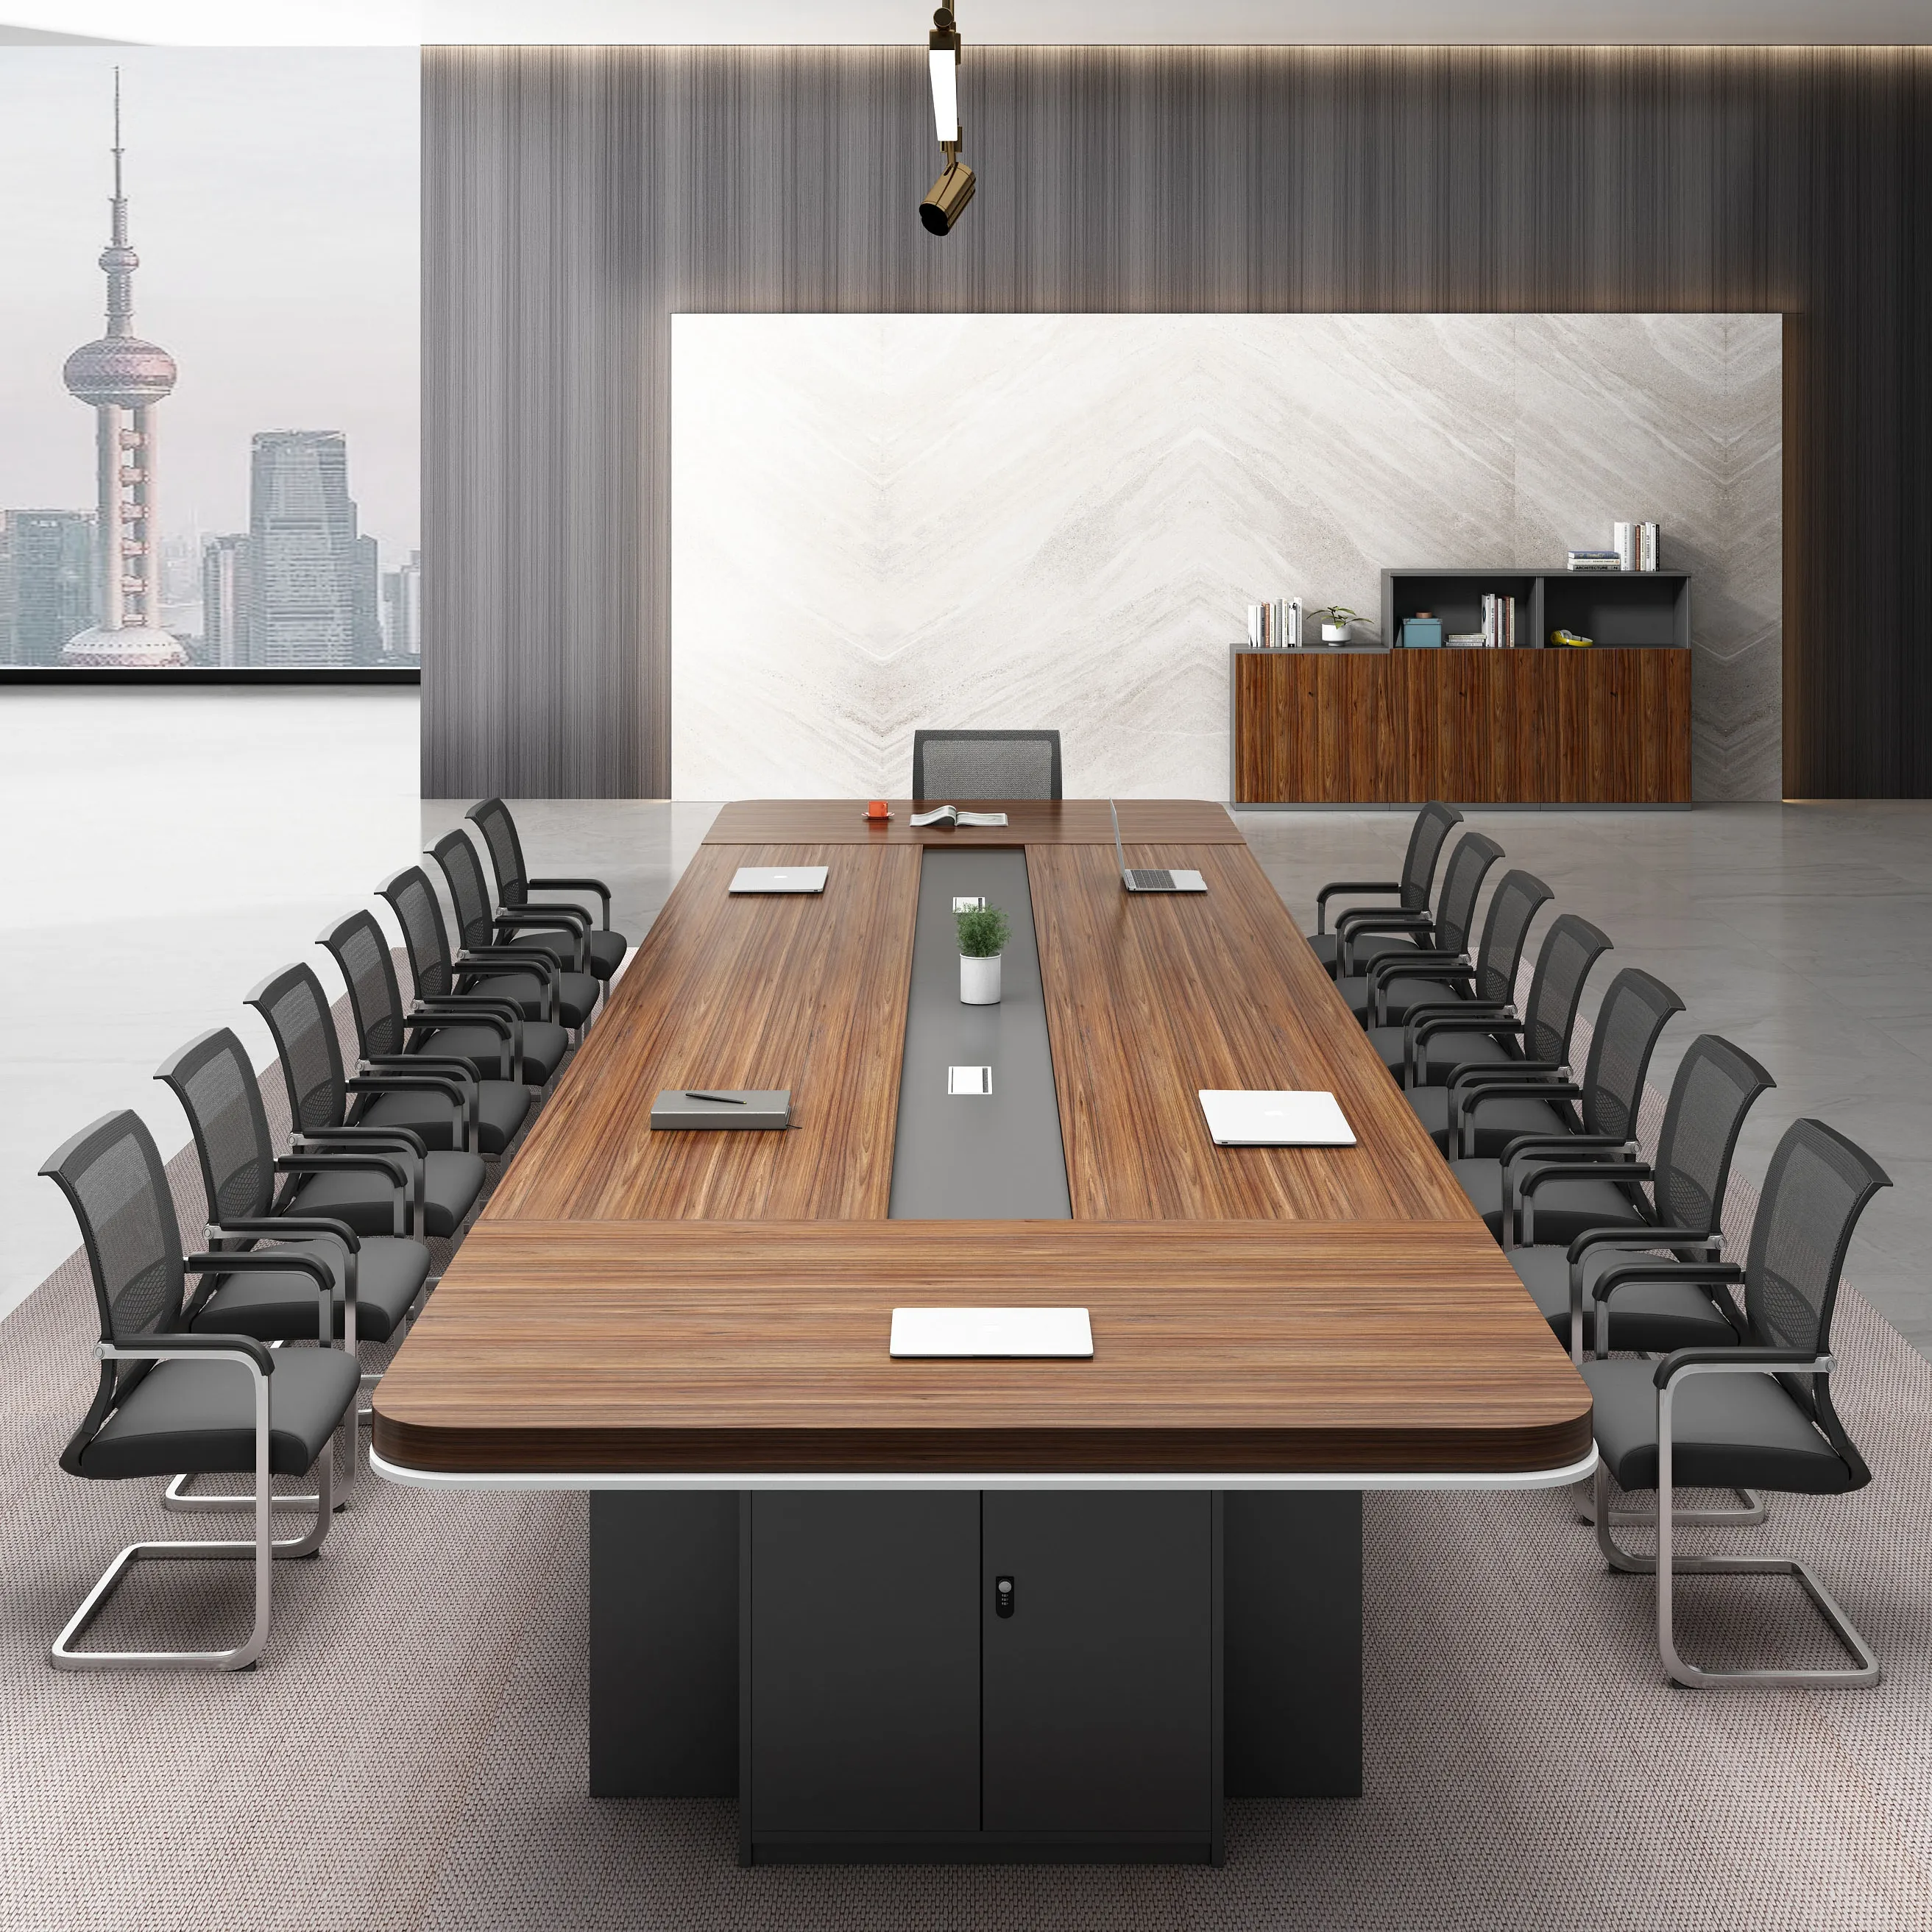 طاولة اجتماعات عصرية كبيرة للمؤتمرات طاولة اجتماعات 12 شخصًا